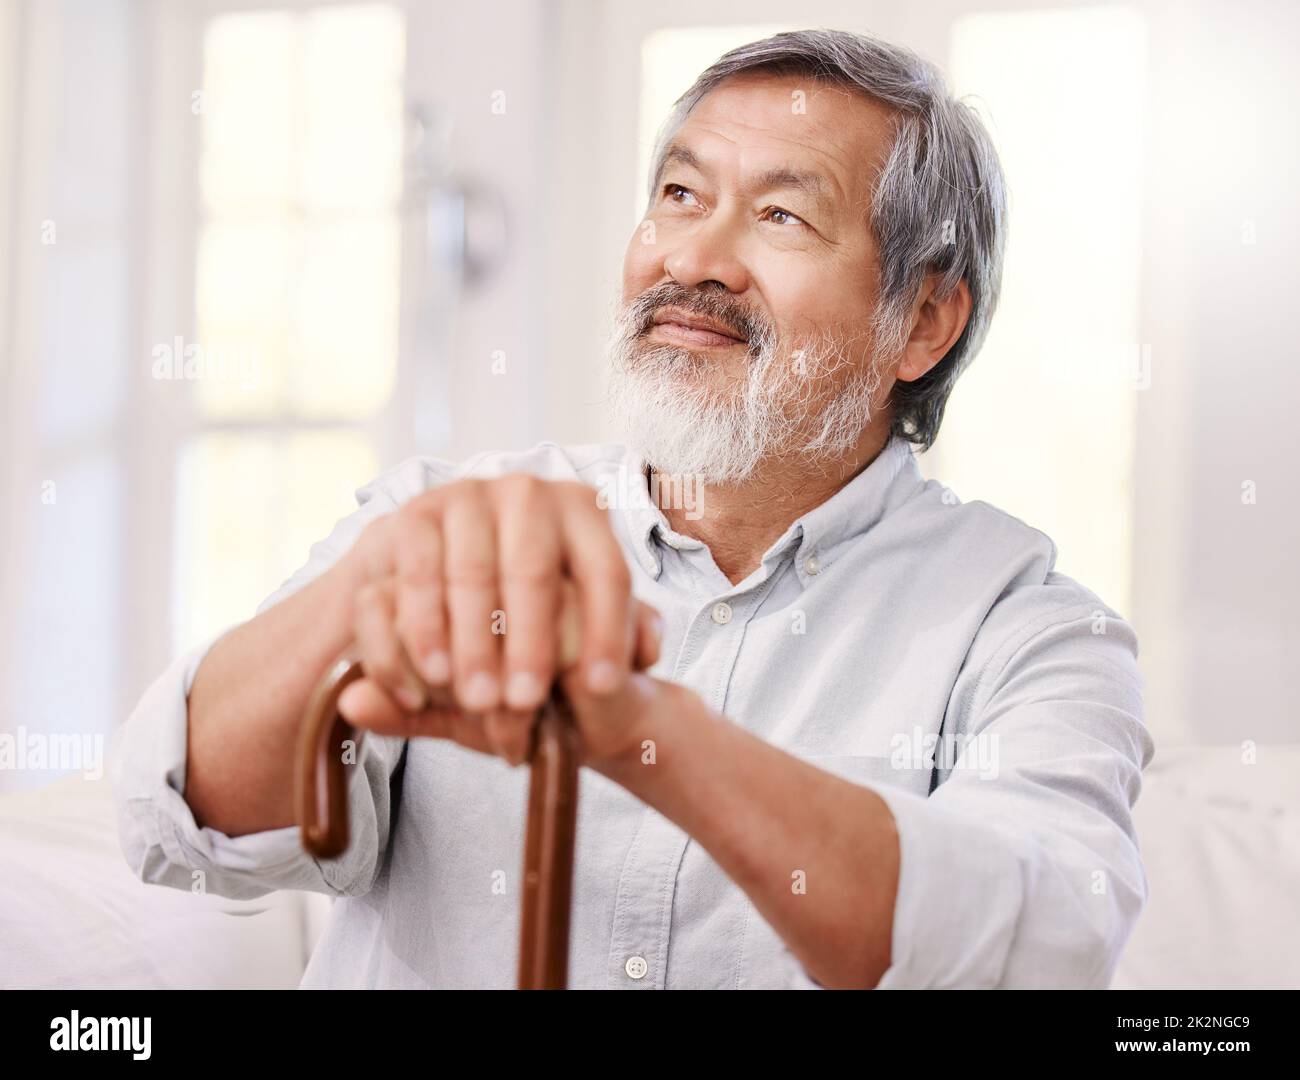 Ich freue mich auf den heutigen Tag. Aufnahme eines älteren Mannes, der zu Hause mit einem hölzernen Spazierstock sitzt. Stockfoto